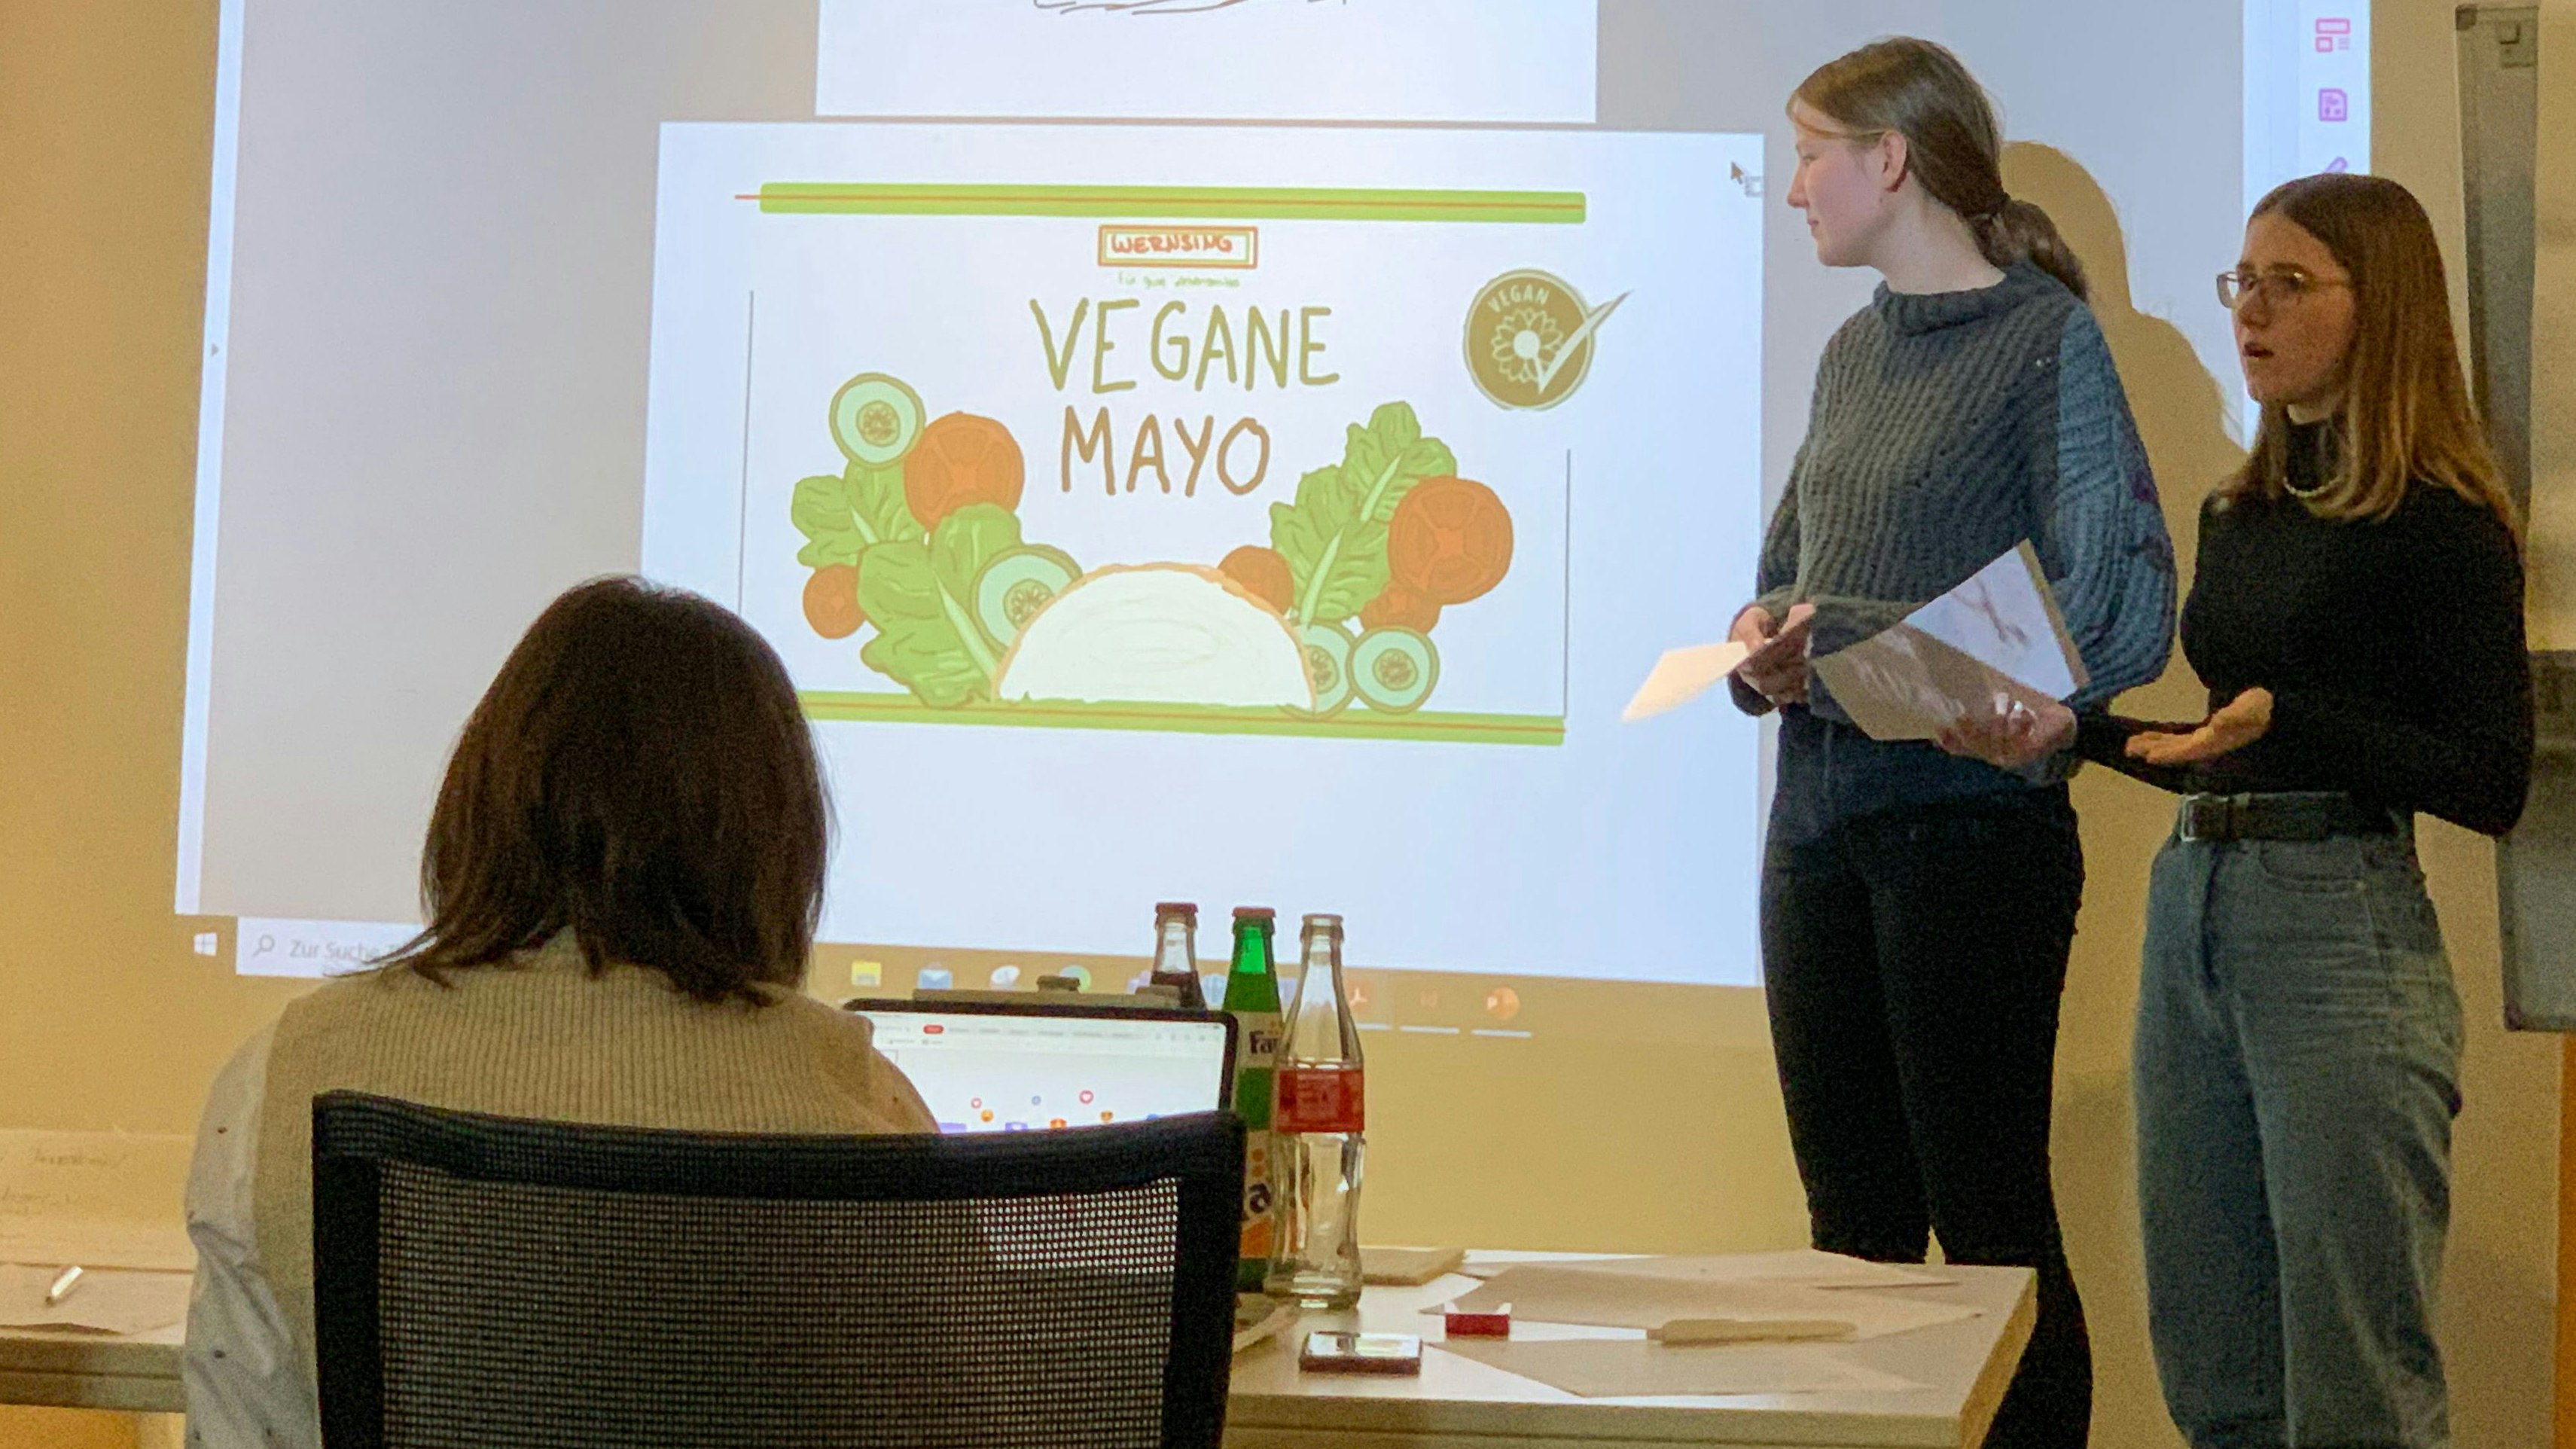 Professionelle Vorstellung: Die Schülerinnen Jana Willenborg (links) und Jana Dewitz bei ihrer Präsentation zur veganen Mayonnaise.&nbsp; &nbsp;Foto: Meinhardt